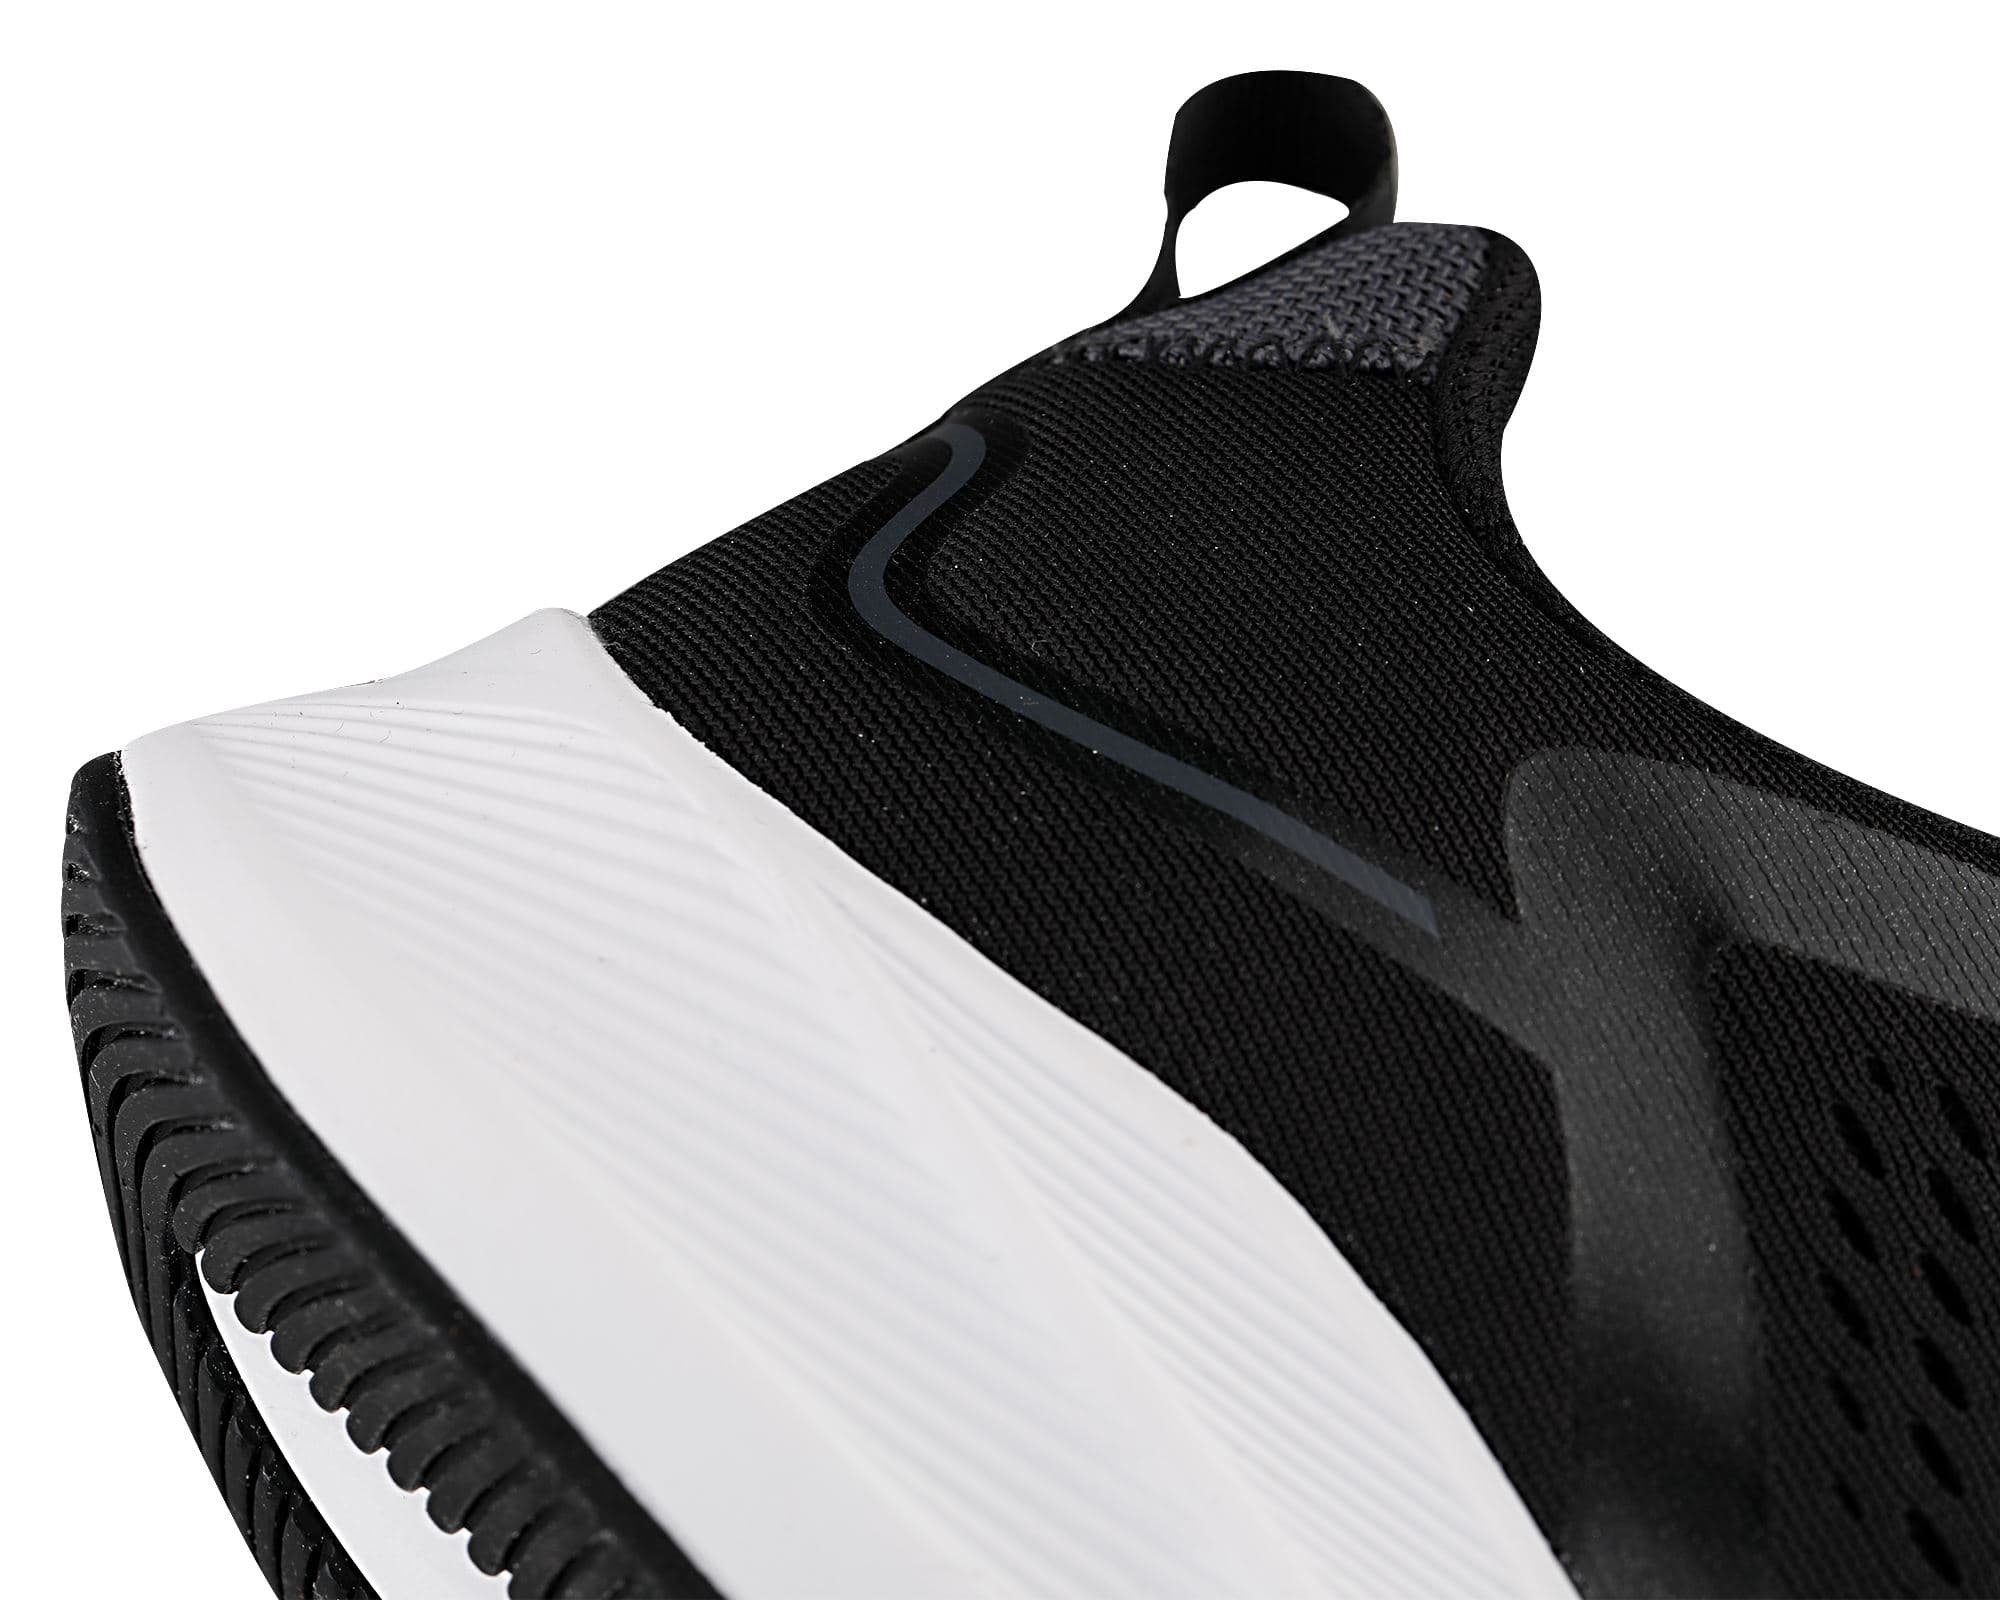 Hundert Erkek Siyah Koşu Ayakkabısı (100663665)